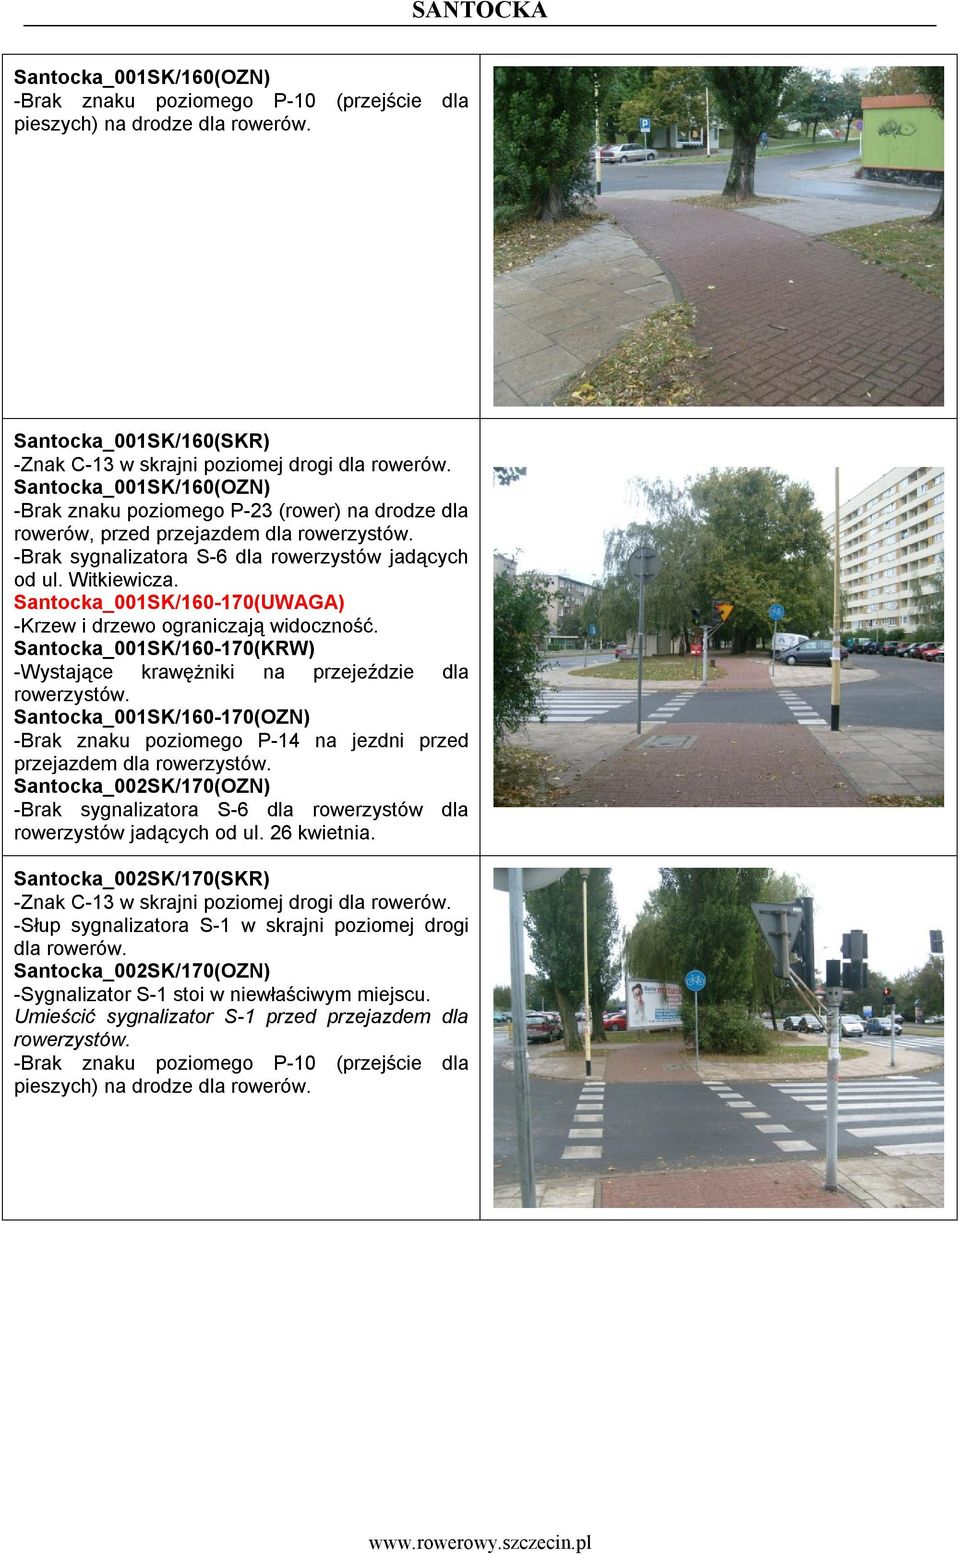 Santocka_001SK/160-170(UWAGA) -Krzew i drzewo ograniczają widoczność. Santocka_001SK/160-170(KRW) -Wystające krawężniki na przejeździe dla rowerzystów.